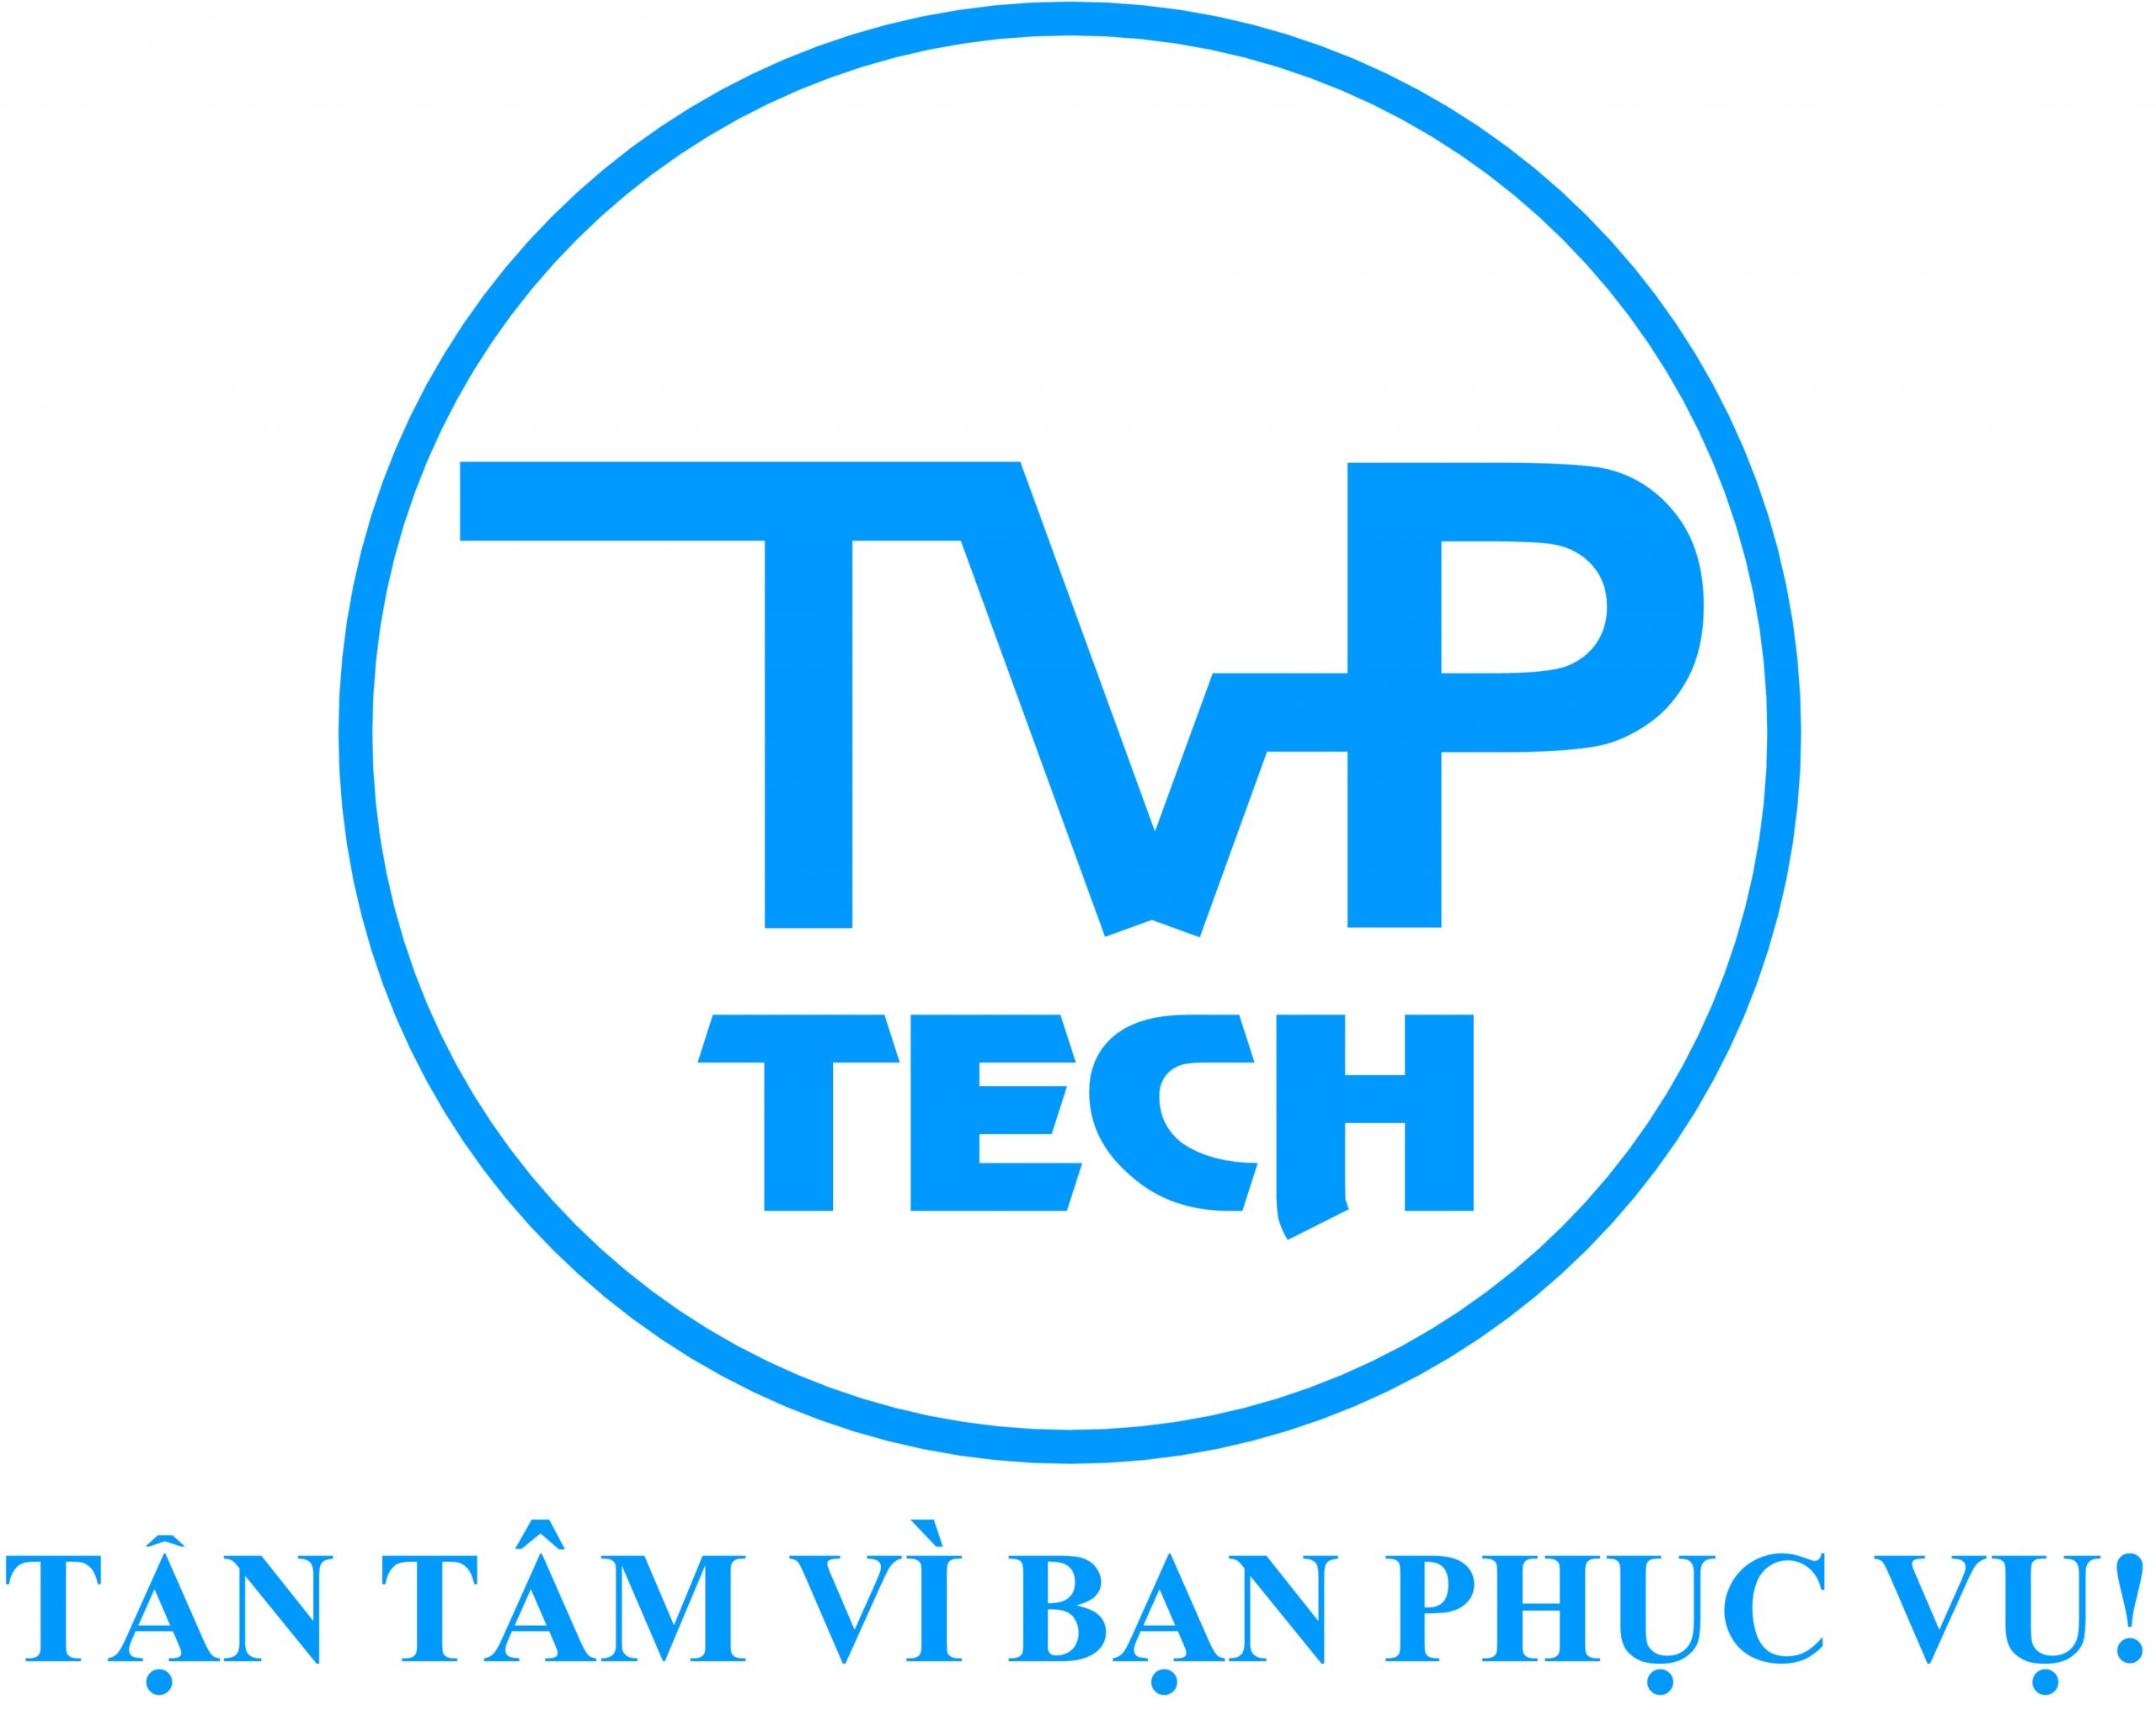 TVP-TECH